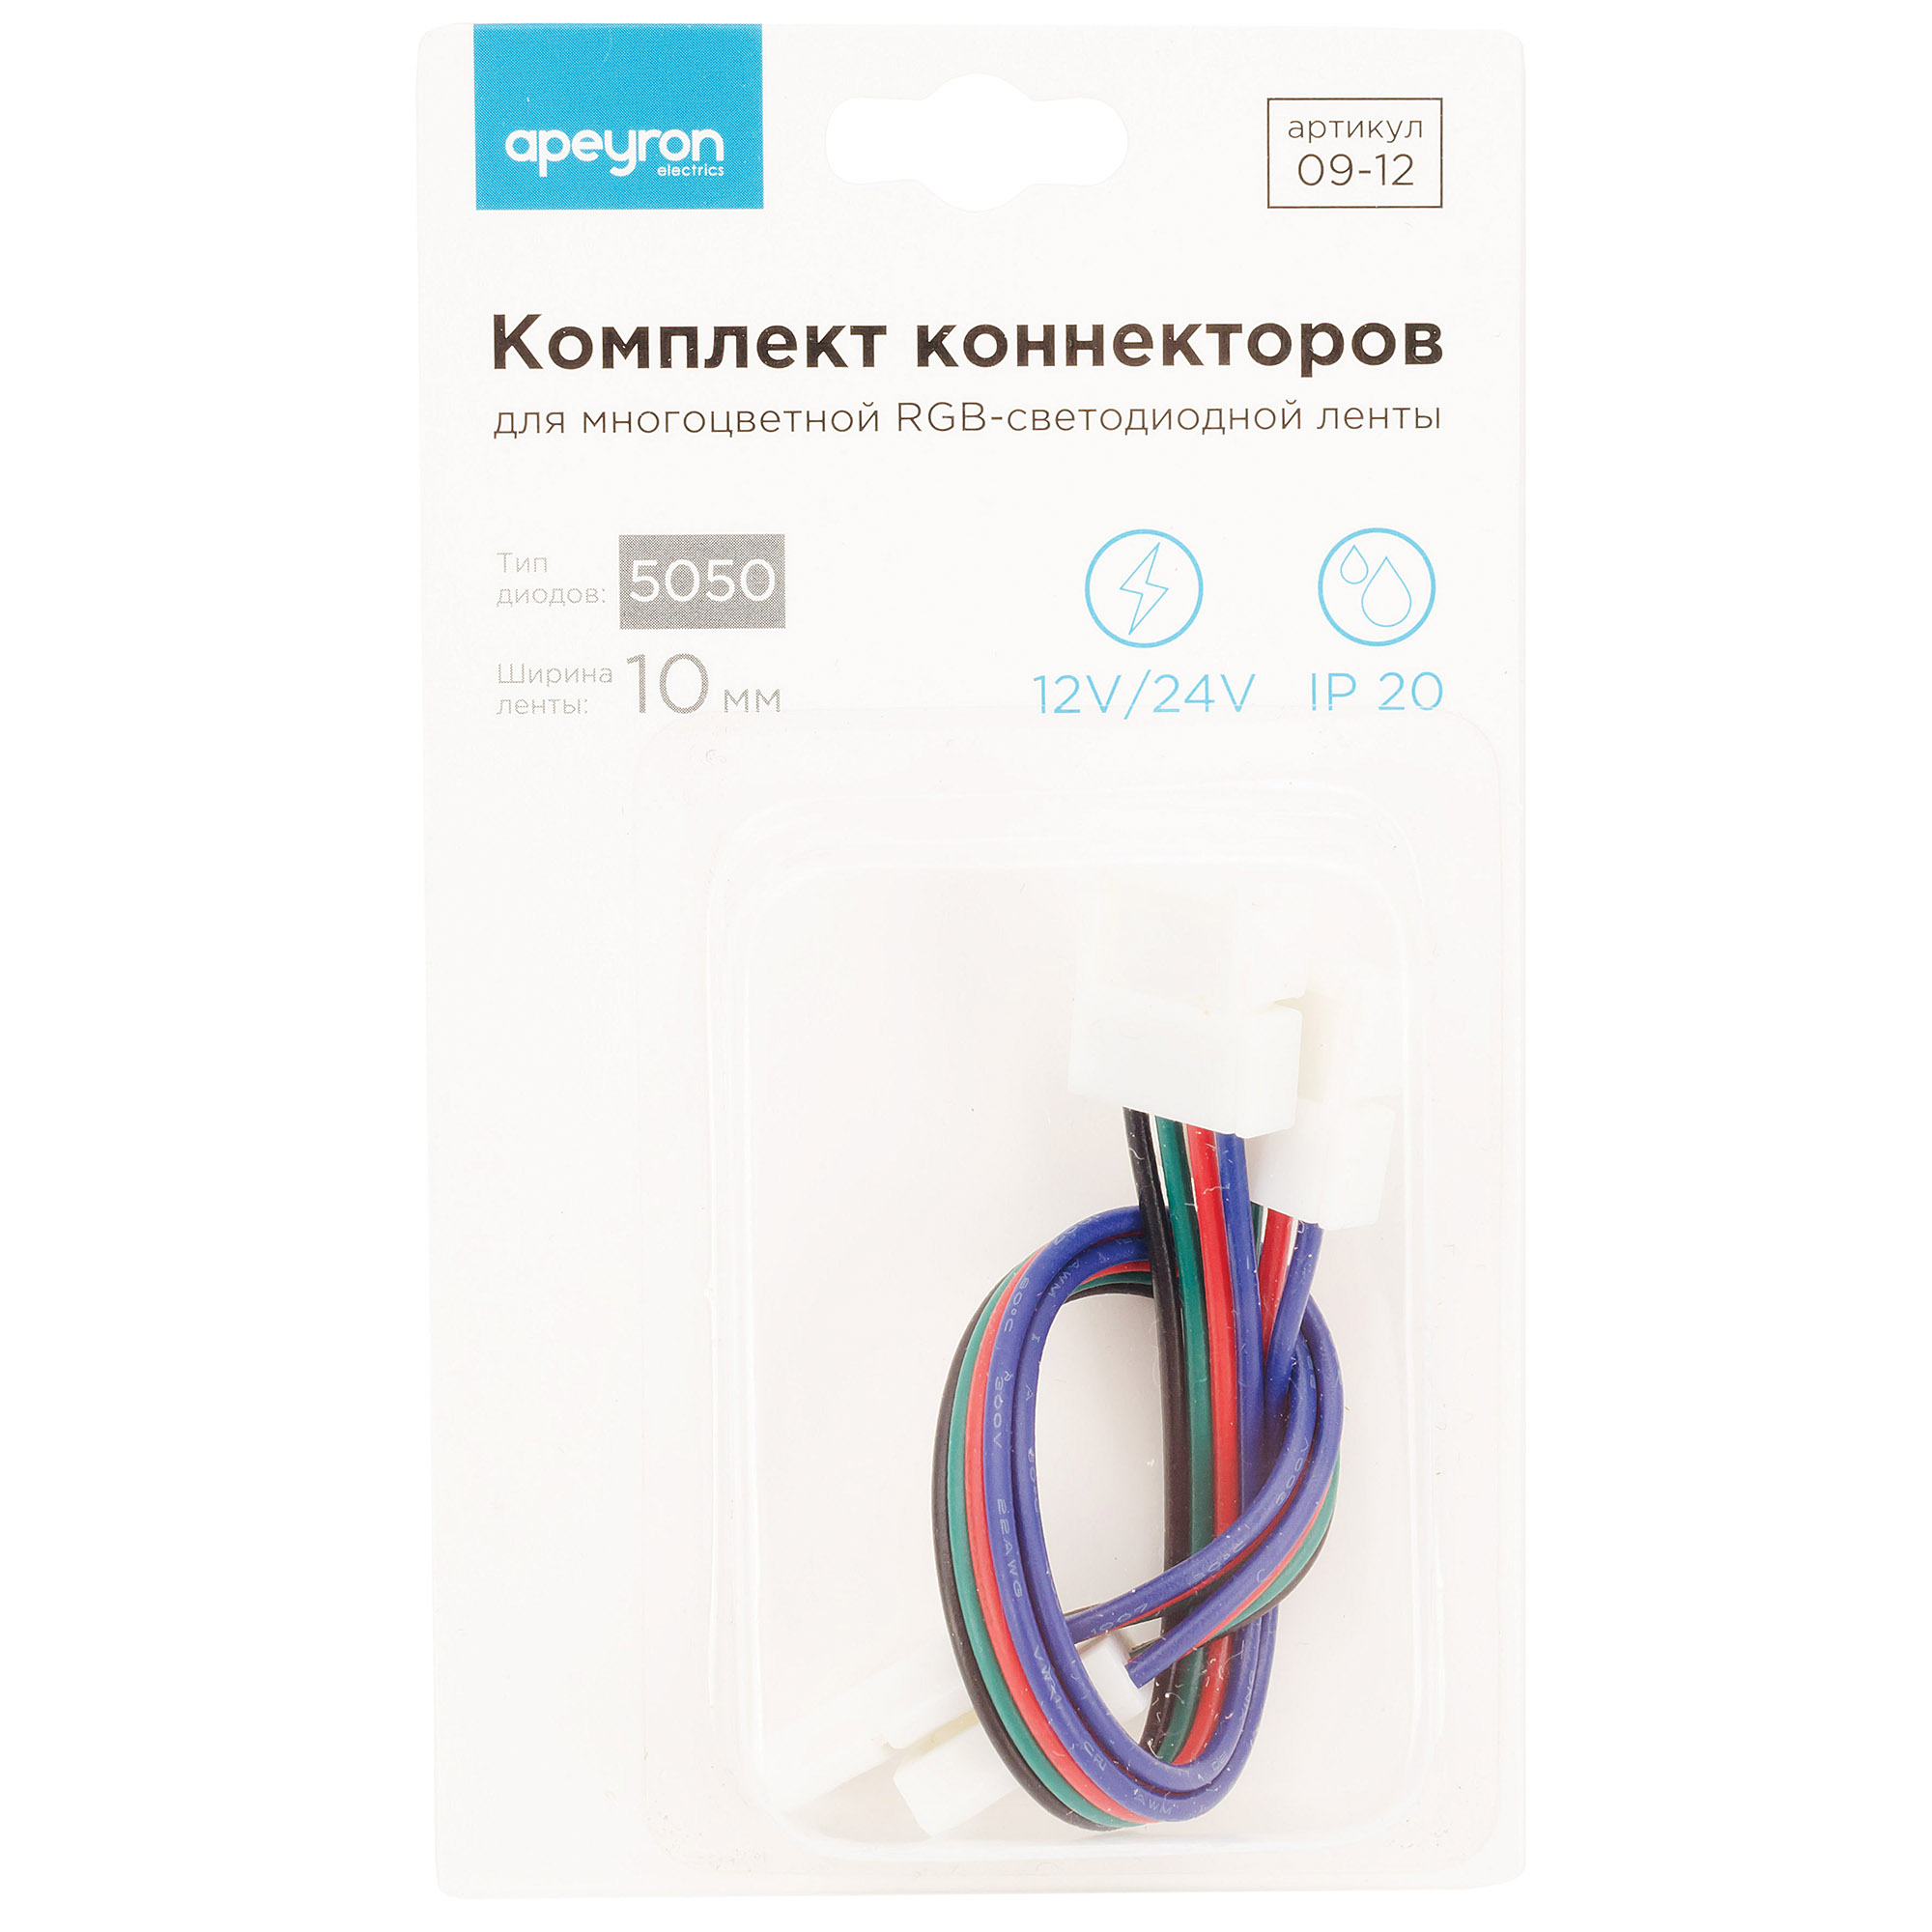 Комплект коннекторов Apeyron (2 клипсы с проводами) для RGB-светодиодной ленты 12В IP20подложка 10мм 09-12 в Москве